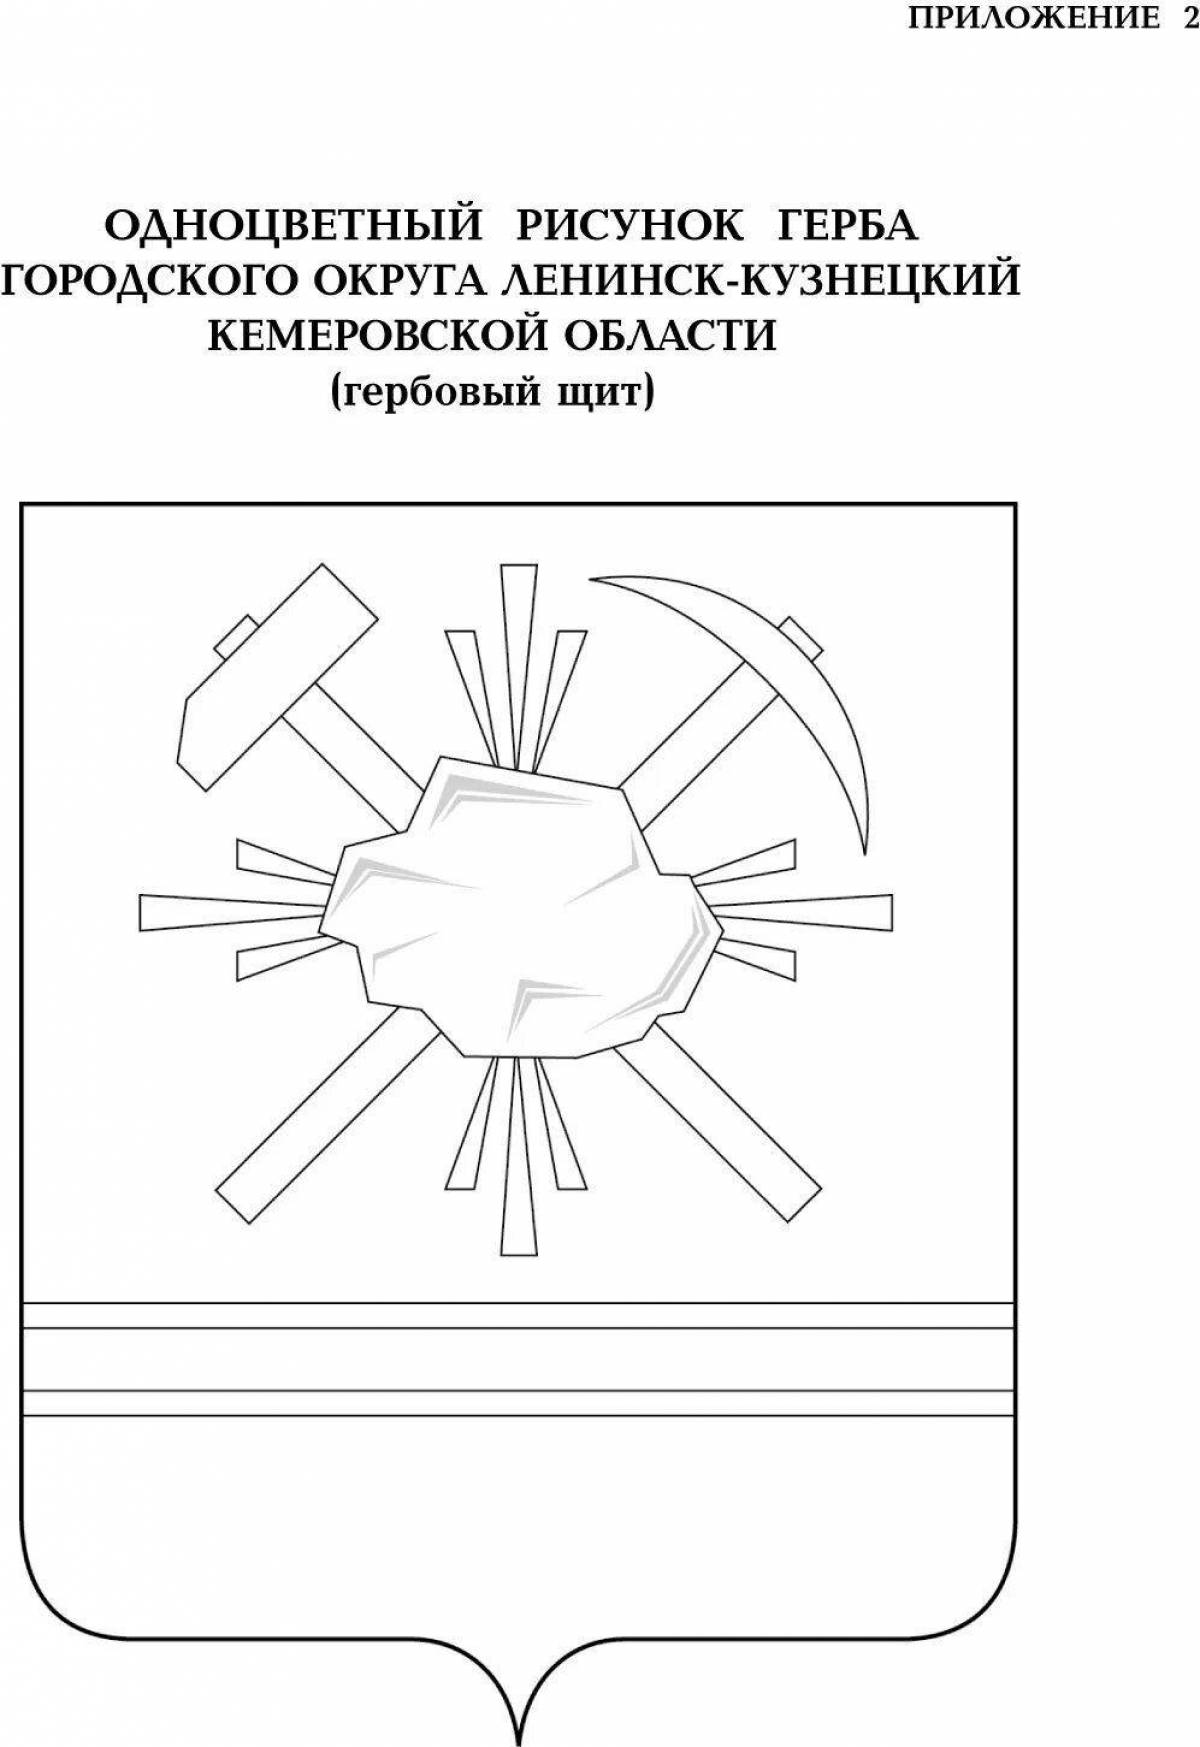 Coat of arms of Kuzbass #1